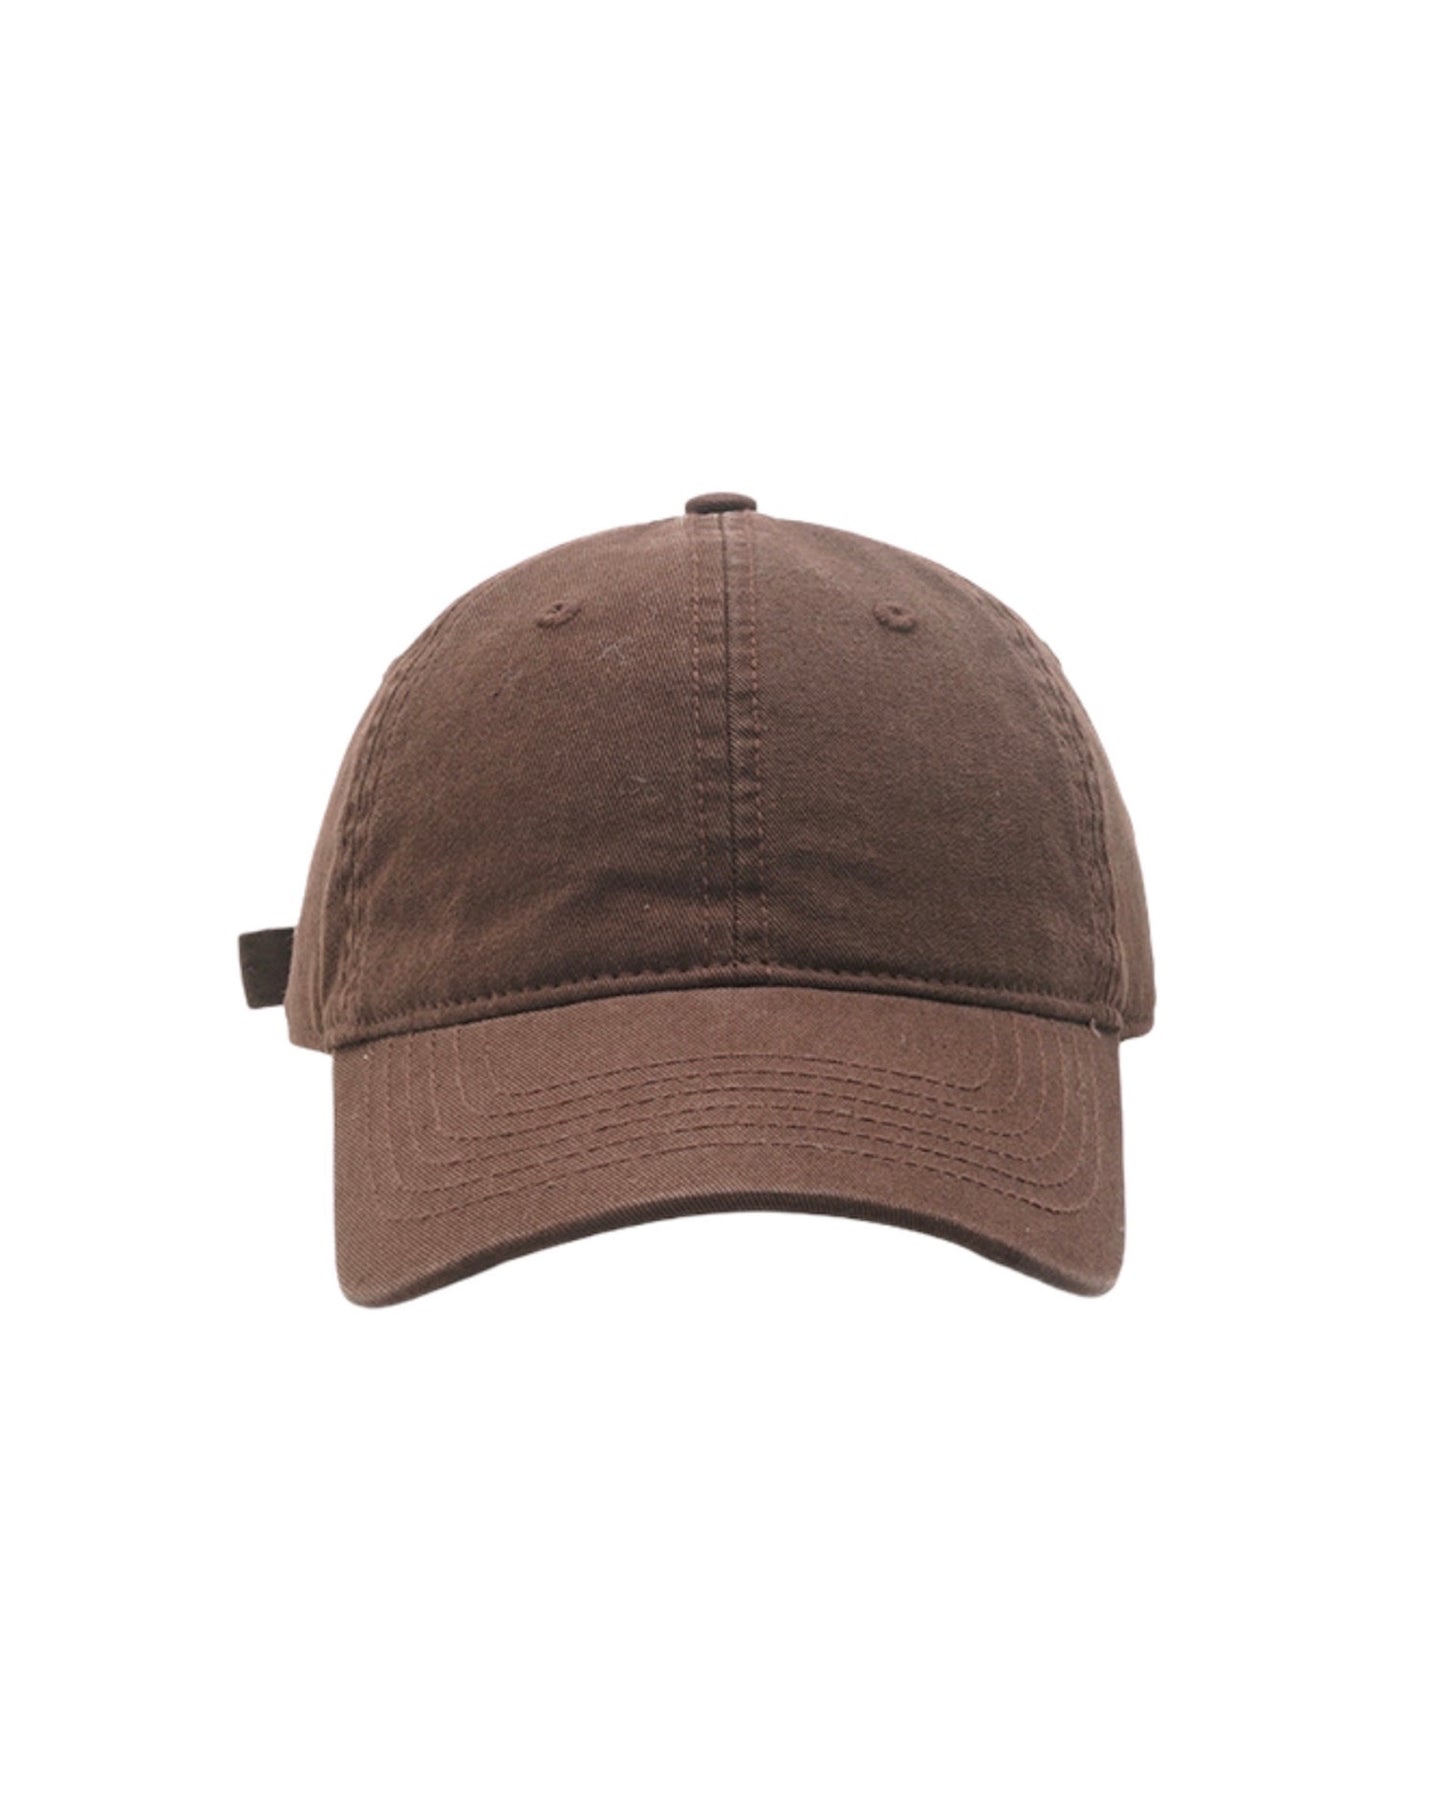 Brown canvas cap *pre-order*